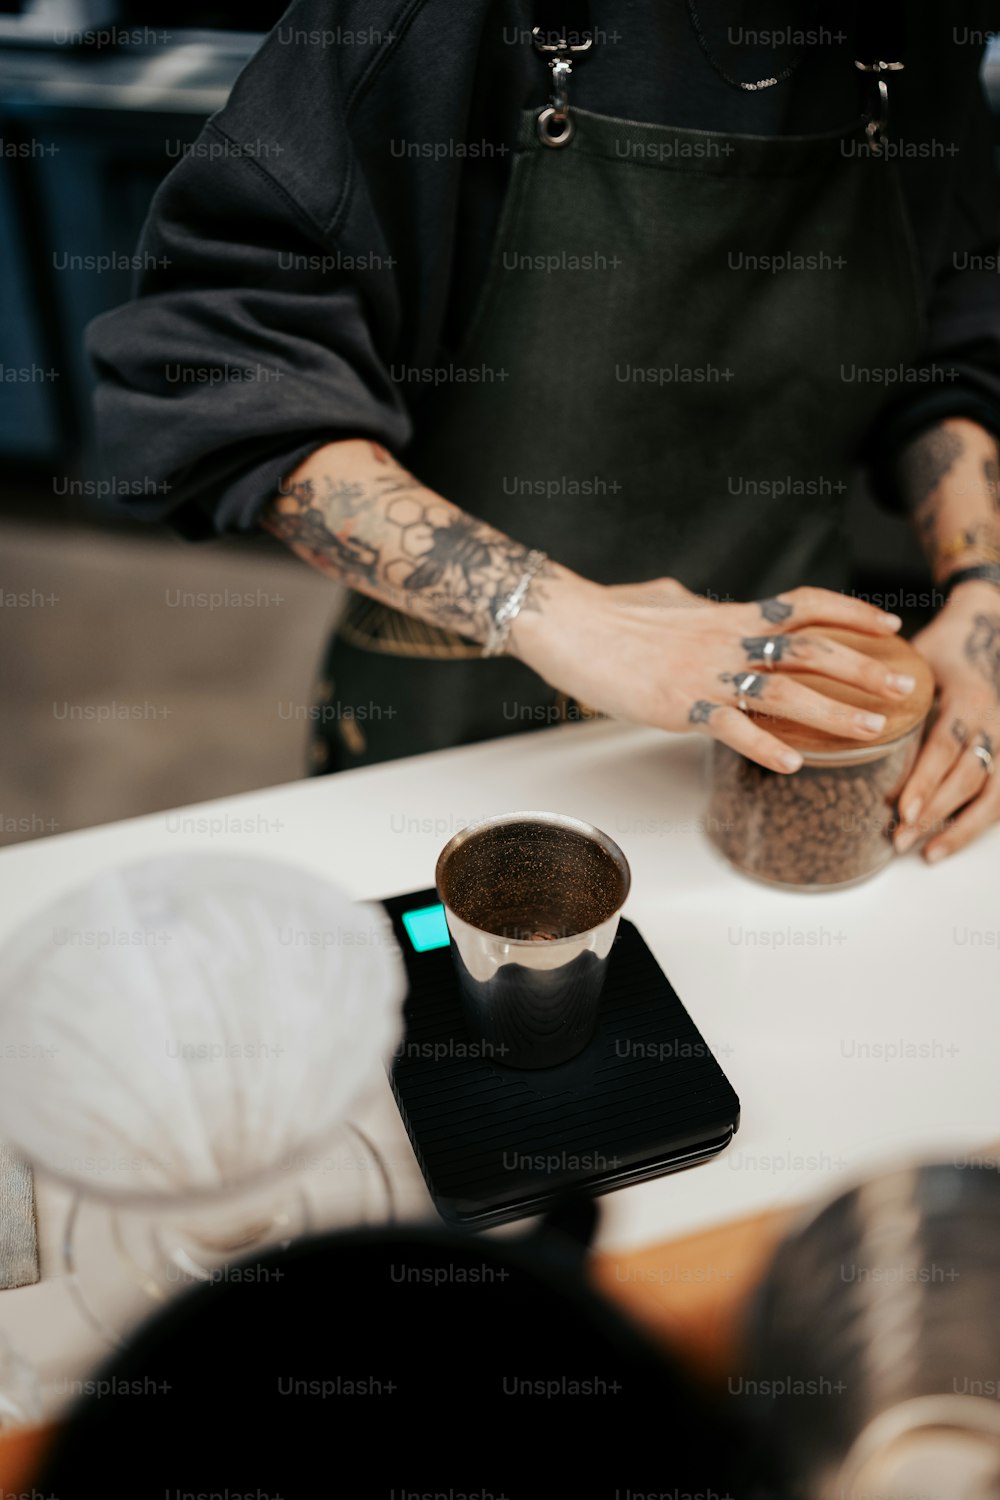 Un uomo con un tatuaggio sul braccio sta preparando una tazza di caffè